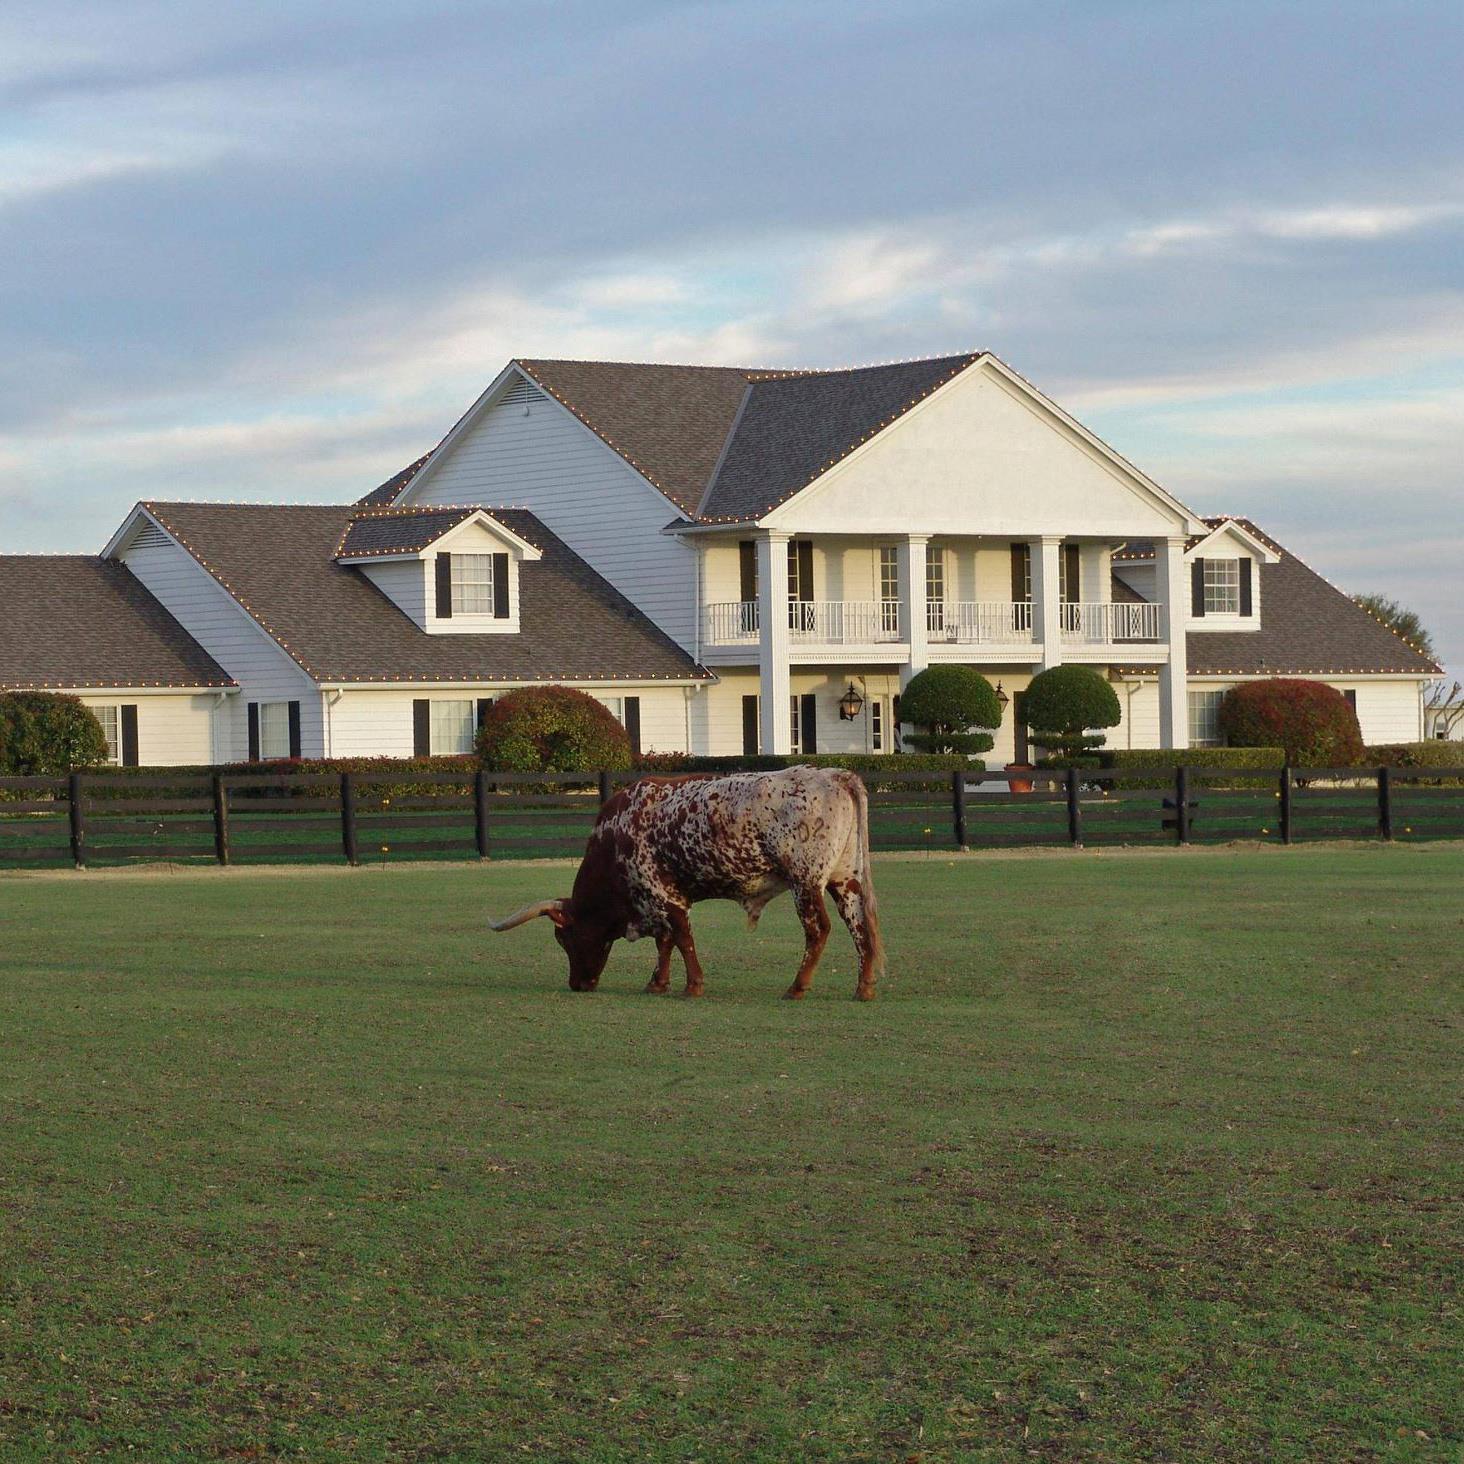 Southfork house & steer